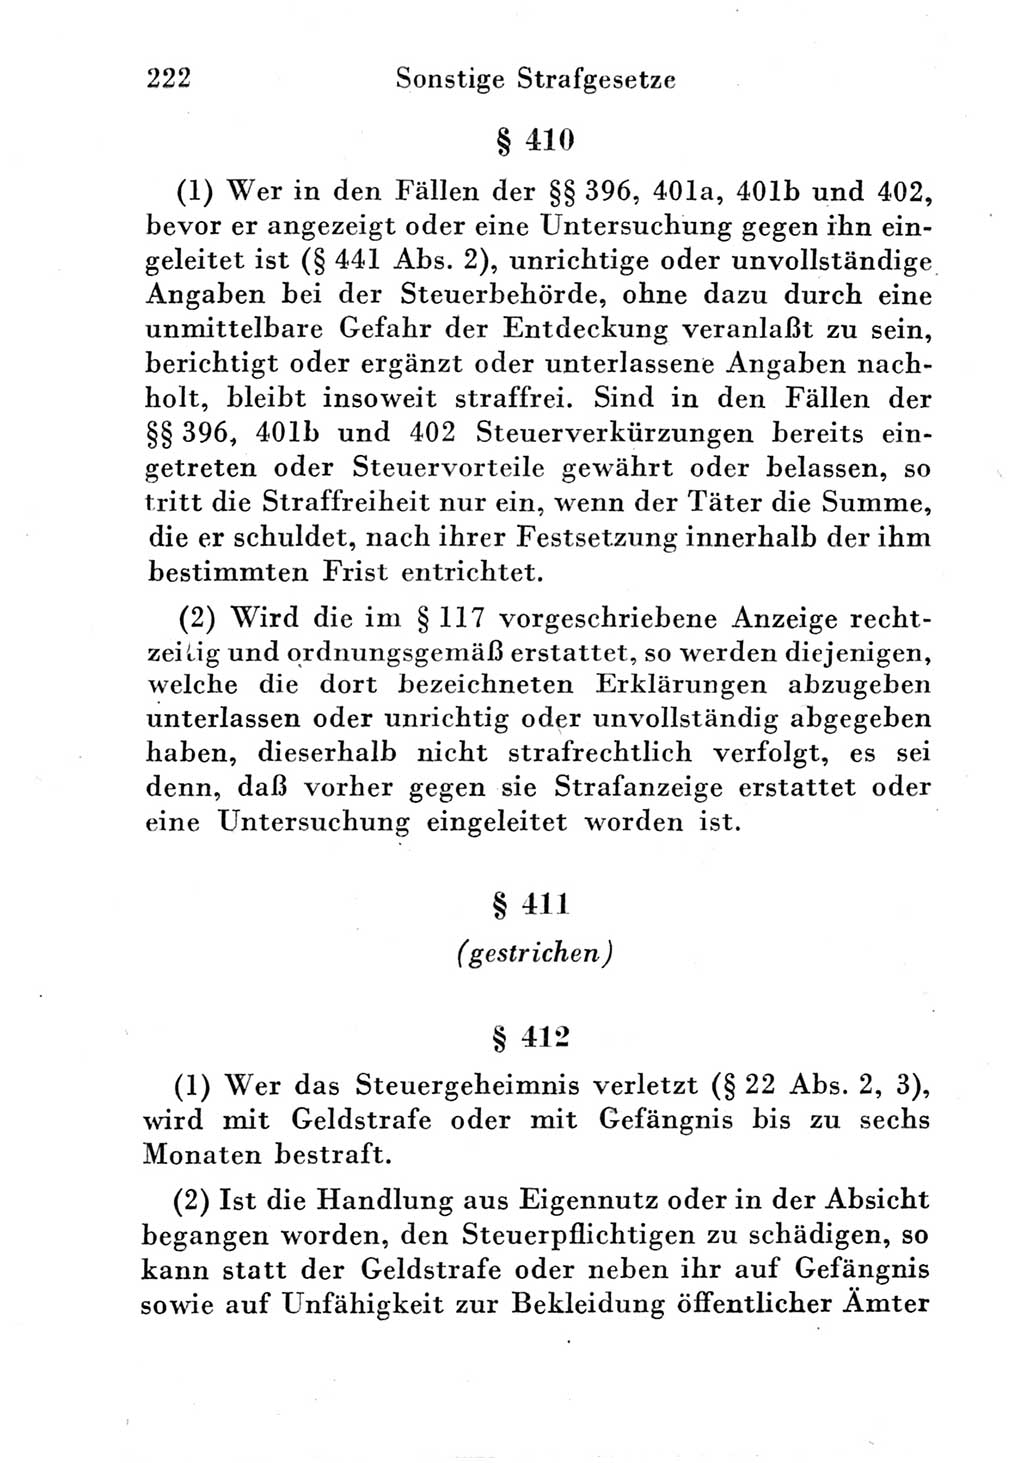 Strafgesetzbuch (StGB) und andere Strafgesetze [Deutsche Demokratische Republik (DDR)] 1951, Seite 222 (StGB Strafges. DDR 1951, S. 222)